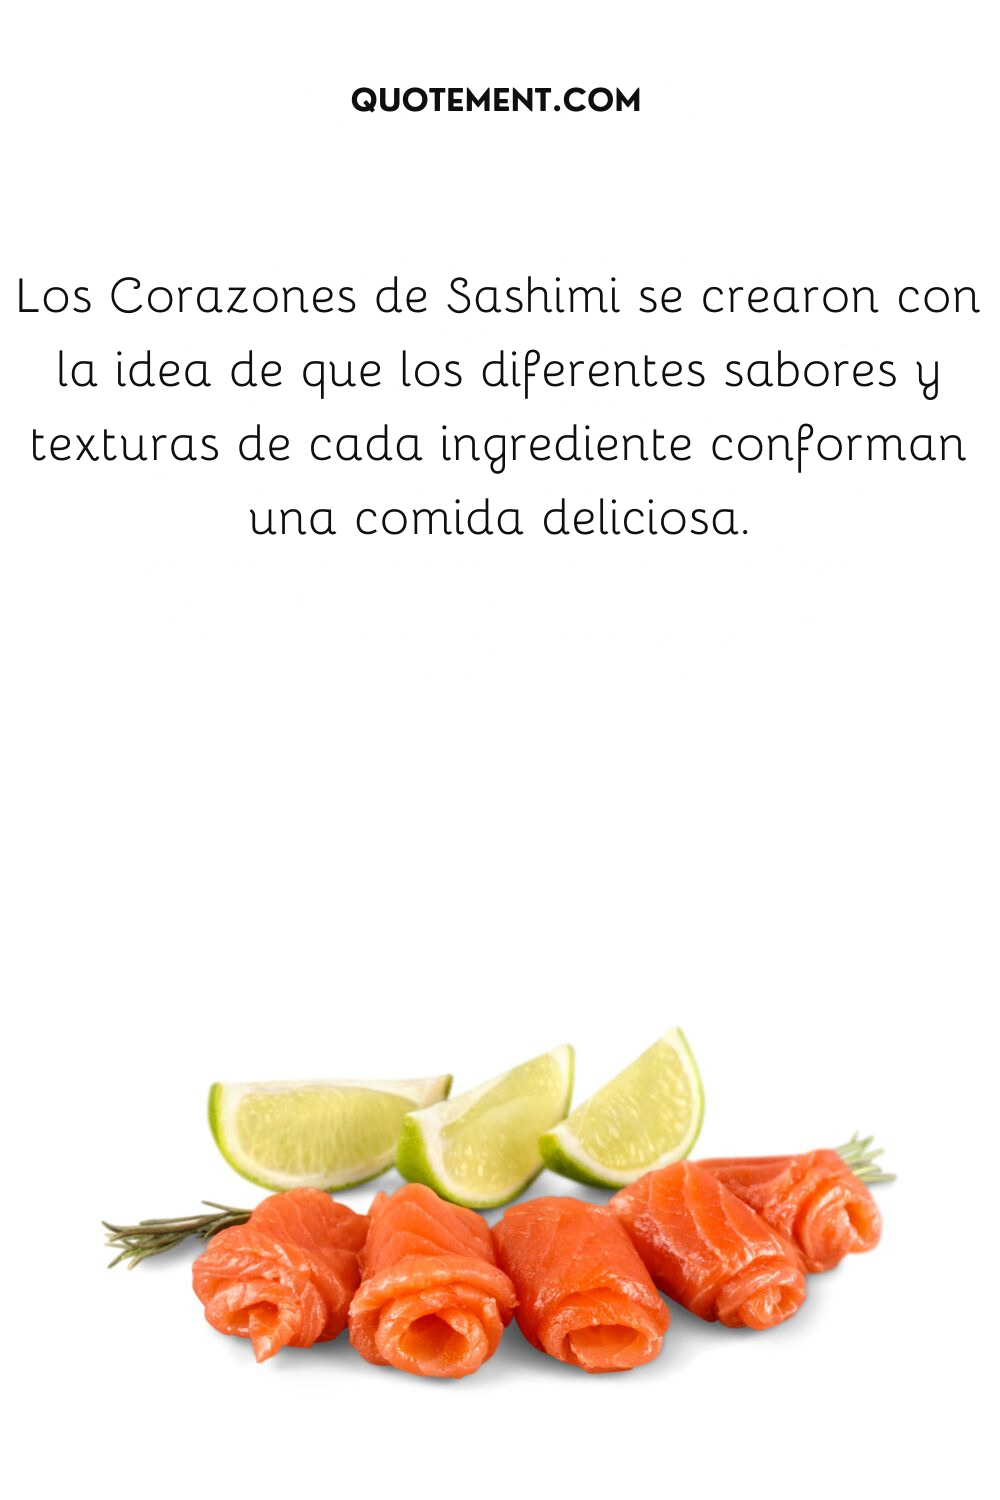 Los Corazones de Sashimi se crearon con la idea de que los diferentes sabores y texturas de cada ingrediente conforman una comida deliciosa.